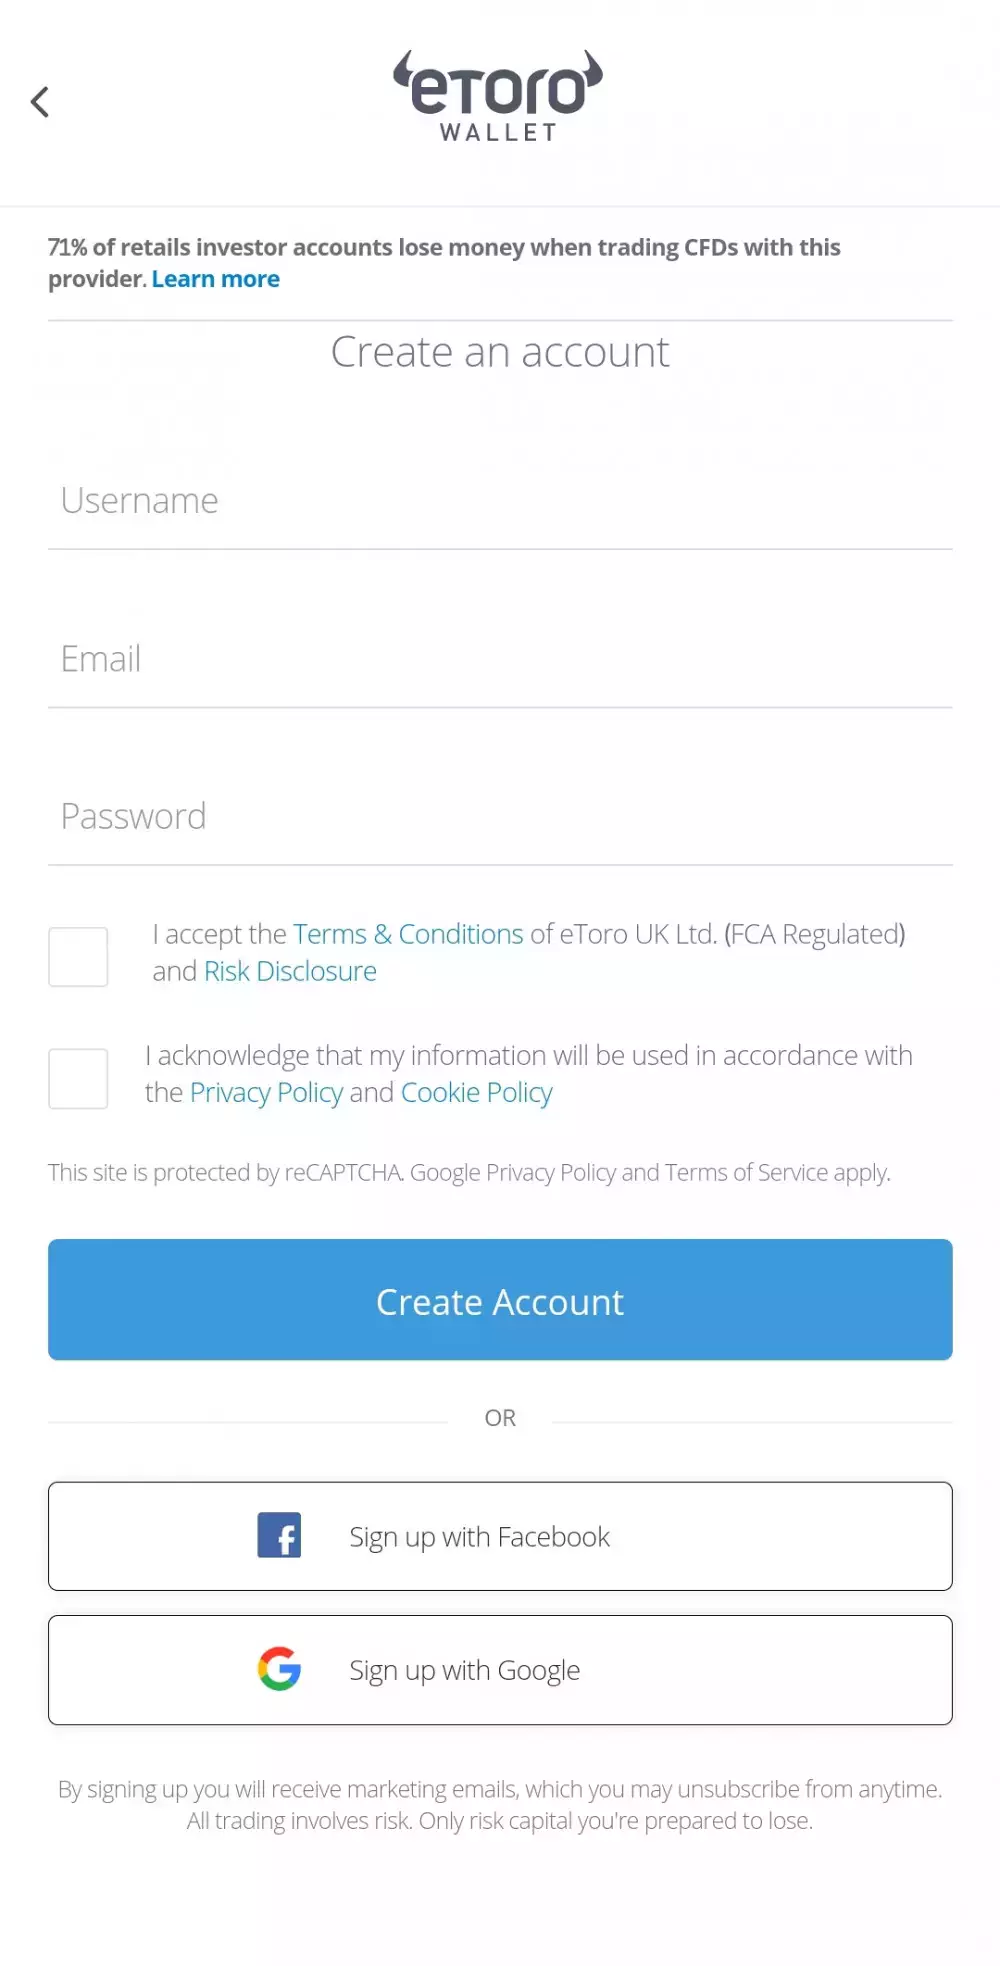 eToro Wallet registration form via the app